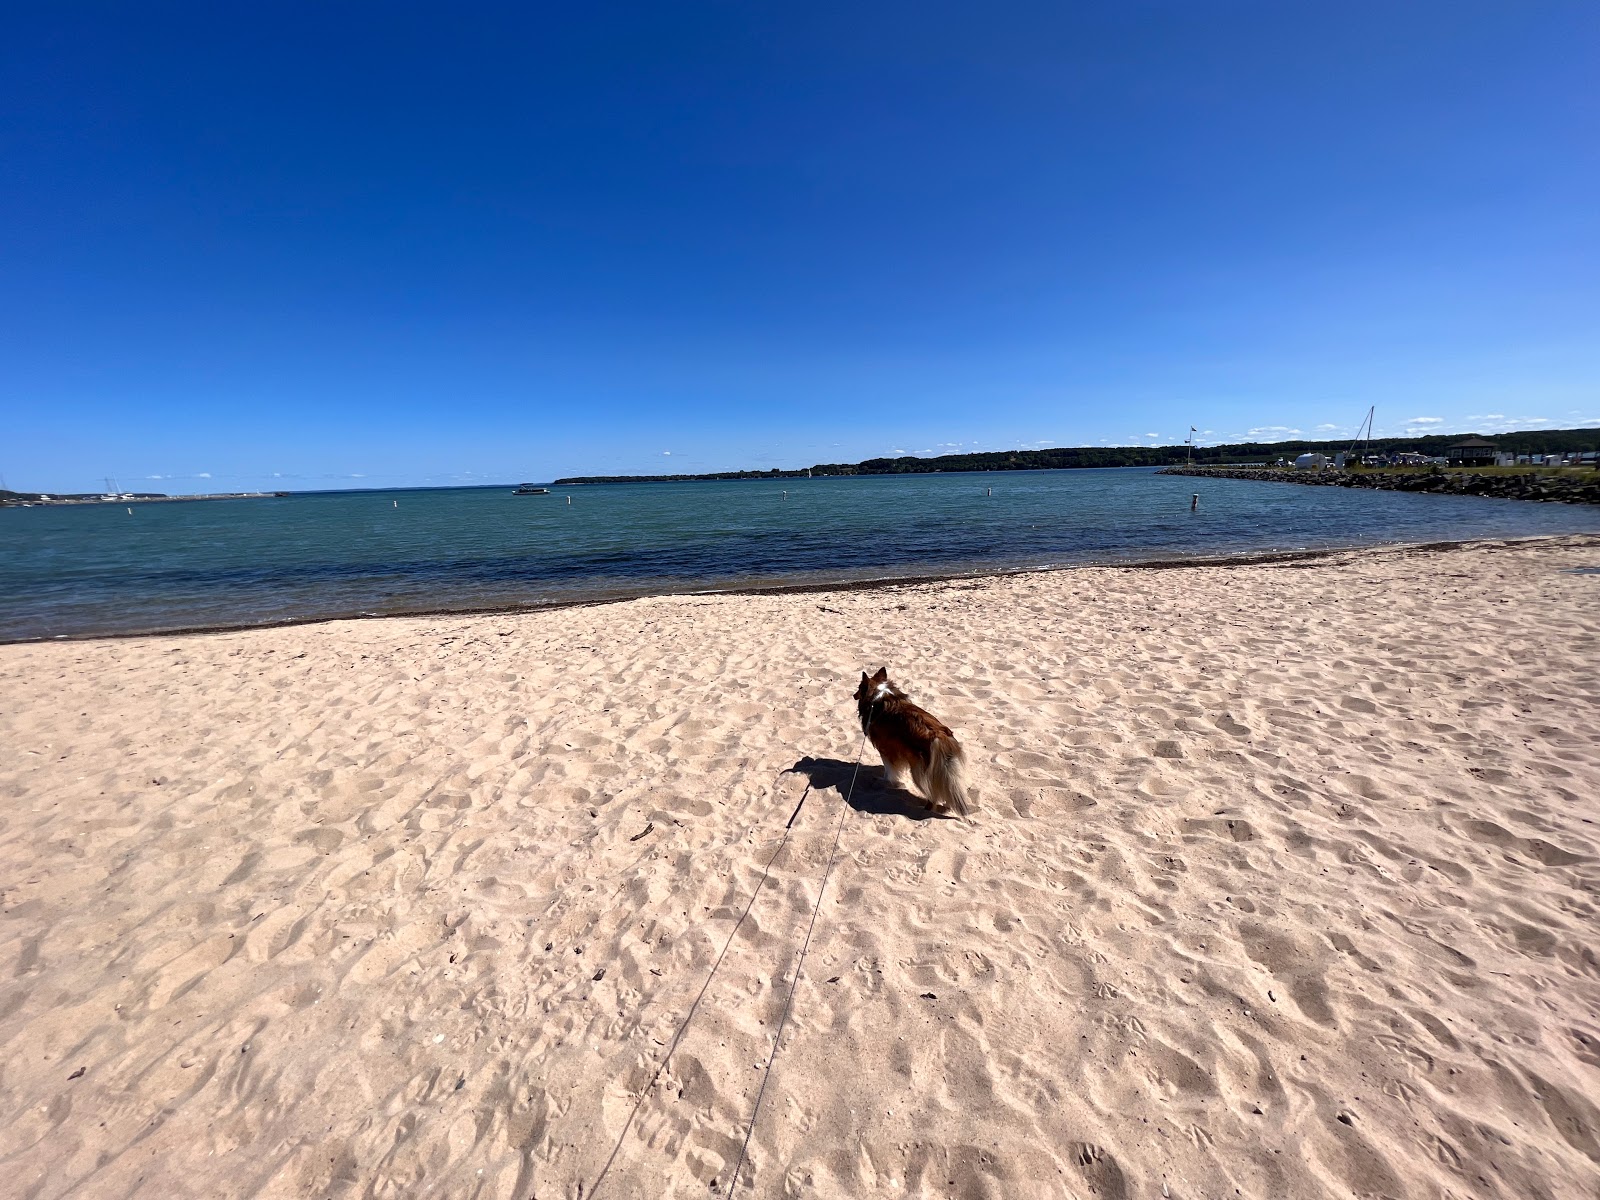 Fotografie cu Suttons Bay Beach - locul popular printre cunoscătorii de relaxare